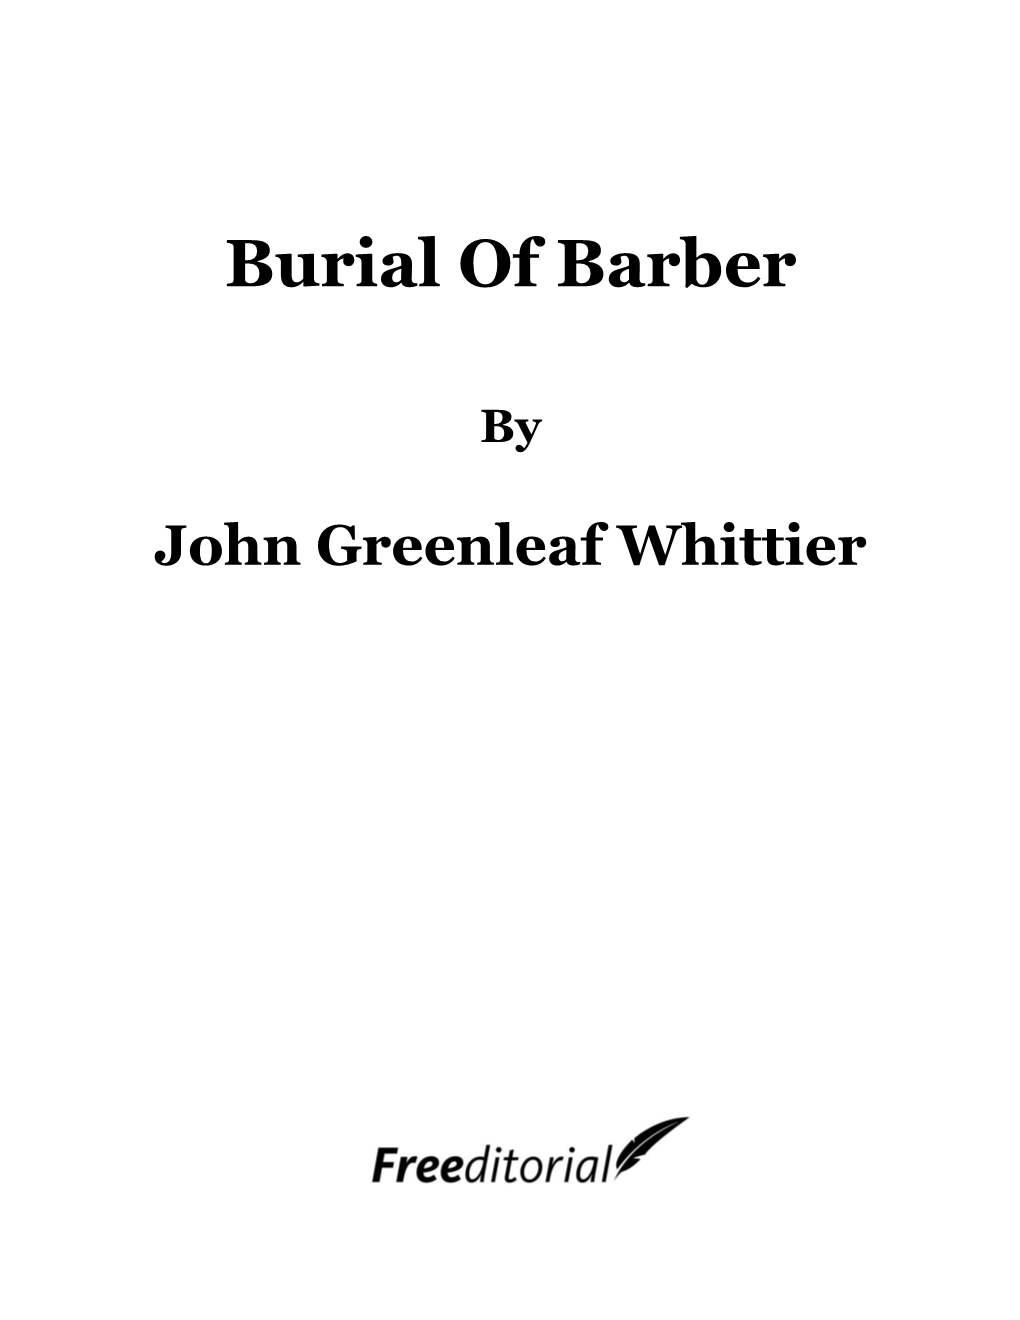 Burial of Barber